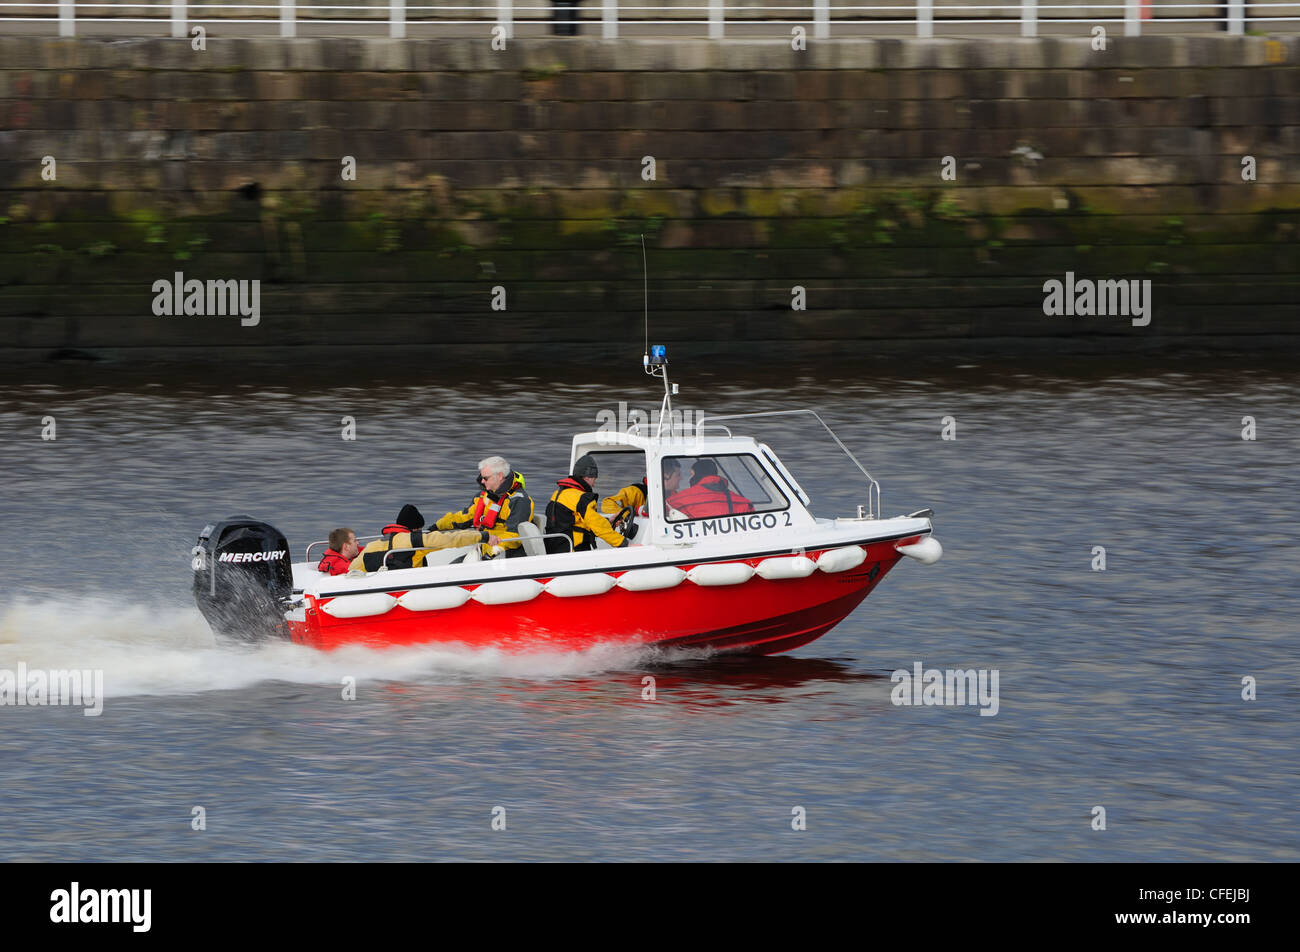 D'Incendie et de sauvetage de Strathclyde de neuf bateaux de sauvetage Sainte Mangouste 2 sur la rivière Clyde dans le centre de Glasgow, Ecosse Banque D'Images